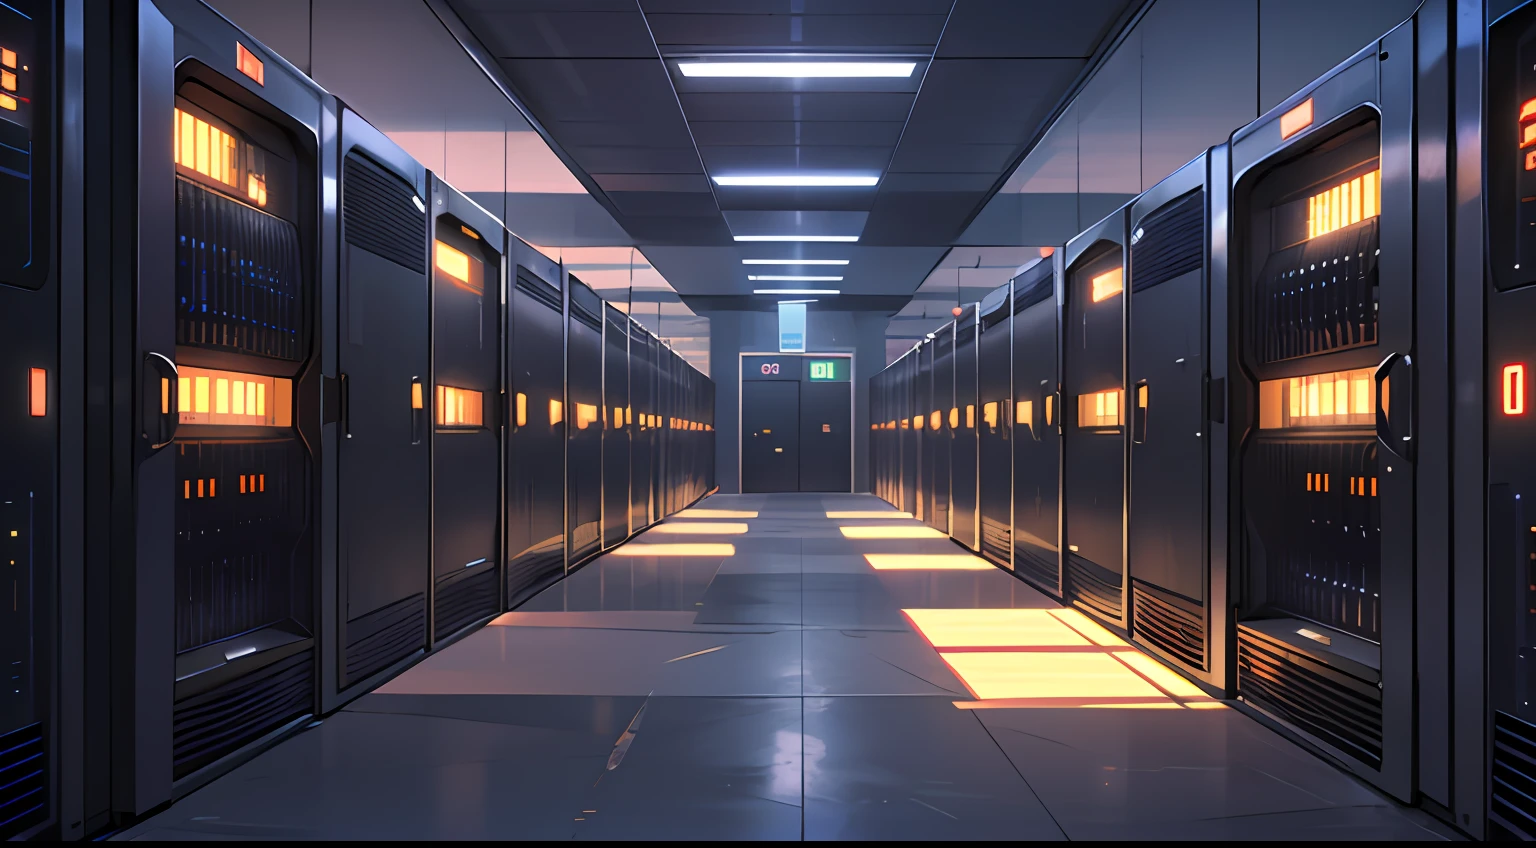 un pasillo poco iluminado con filas de datos y pantallas de computadora, El fondo es la sala del servidor de datos., hackear la computadora central, ciberespacio, en un centro de datos realista, 3840x2160, 3840 x 2160, fondo del pasillo de la nave espacial, arquitectura cibernética, ciberespacio surrealista, en el centro de datos detallado